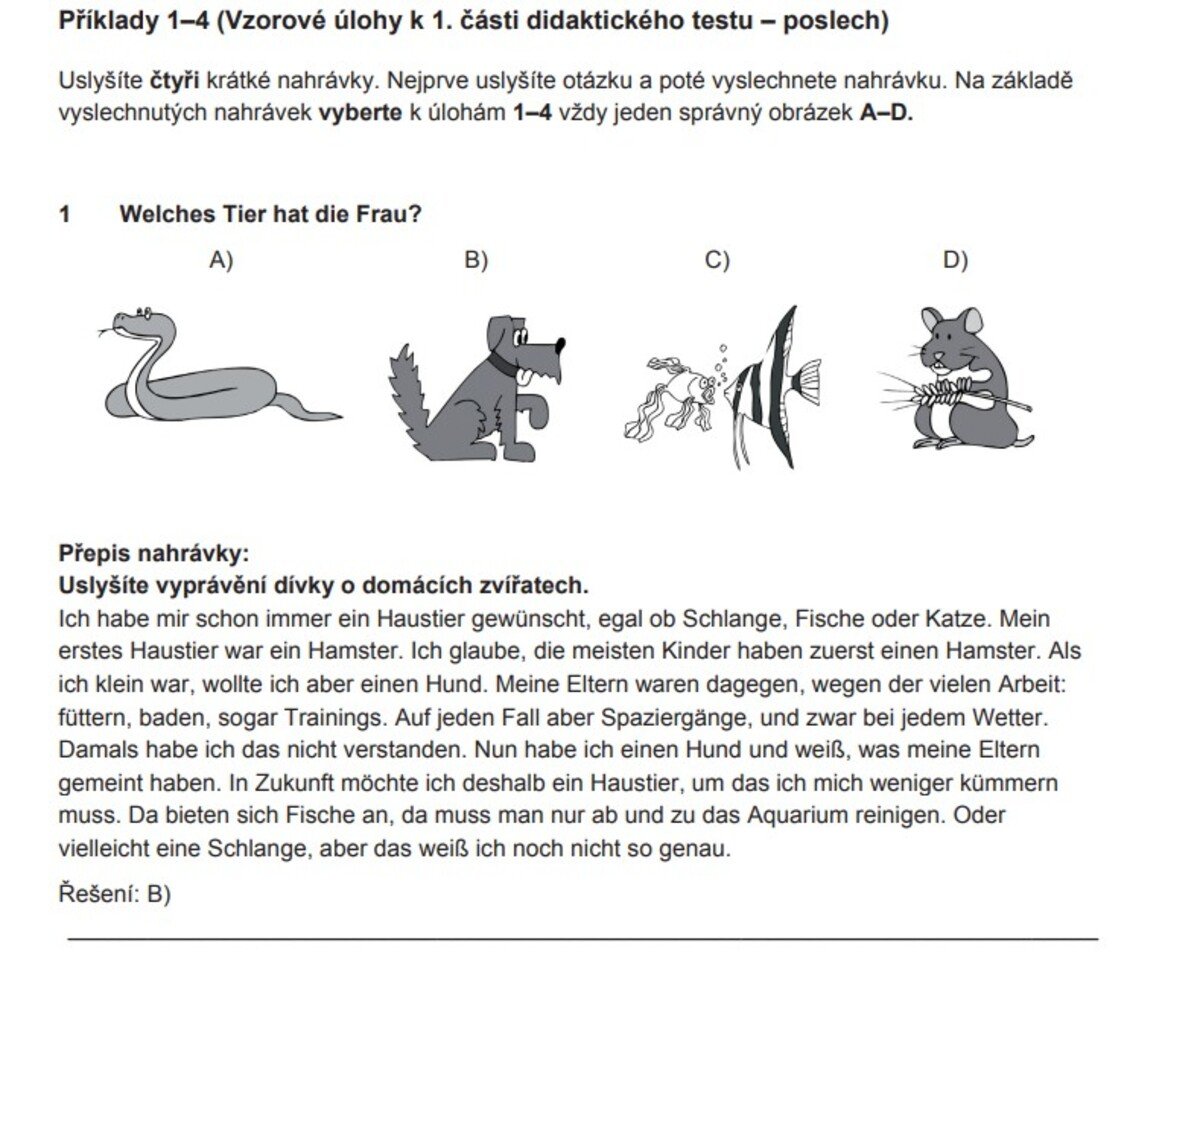 Příklady úloh v didaktickém testu z němčiny.